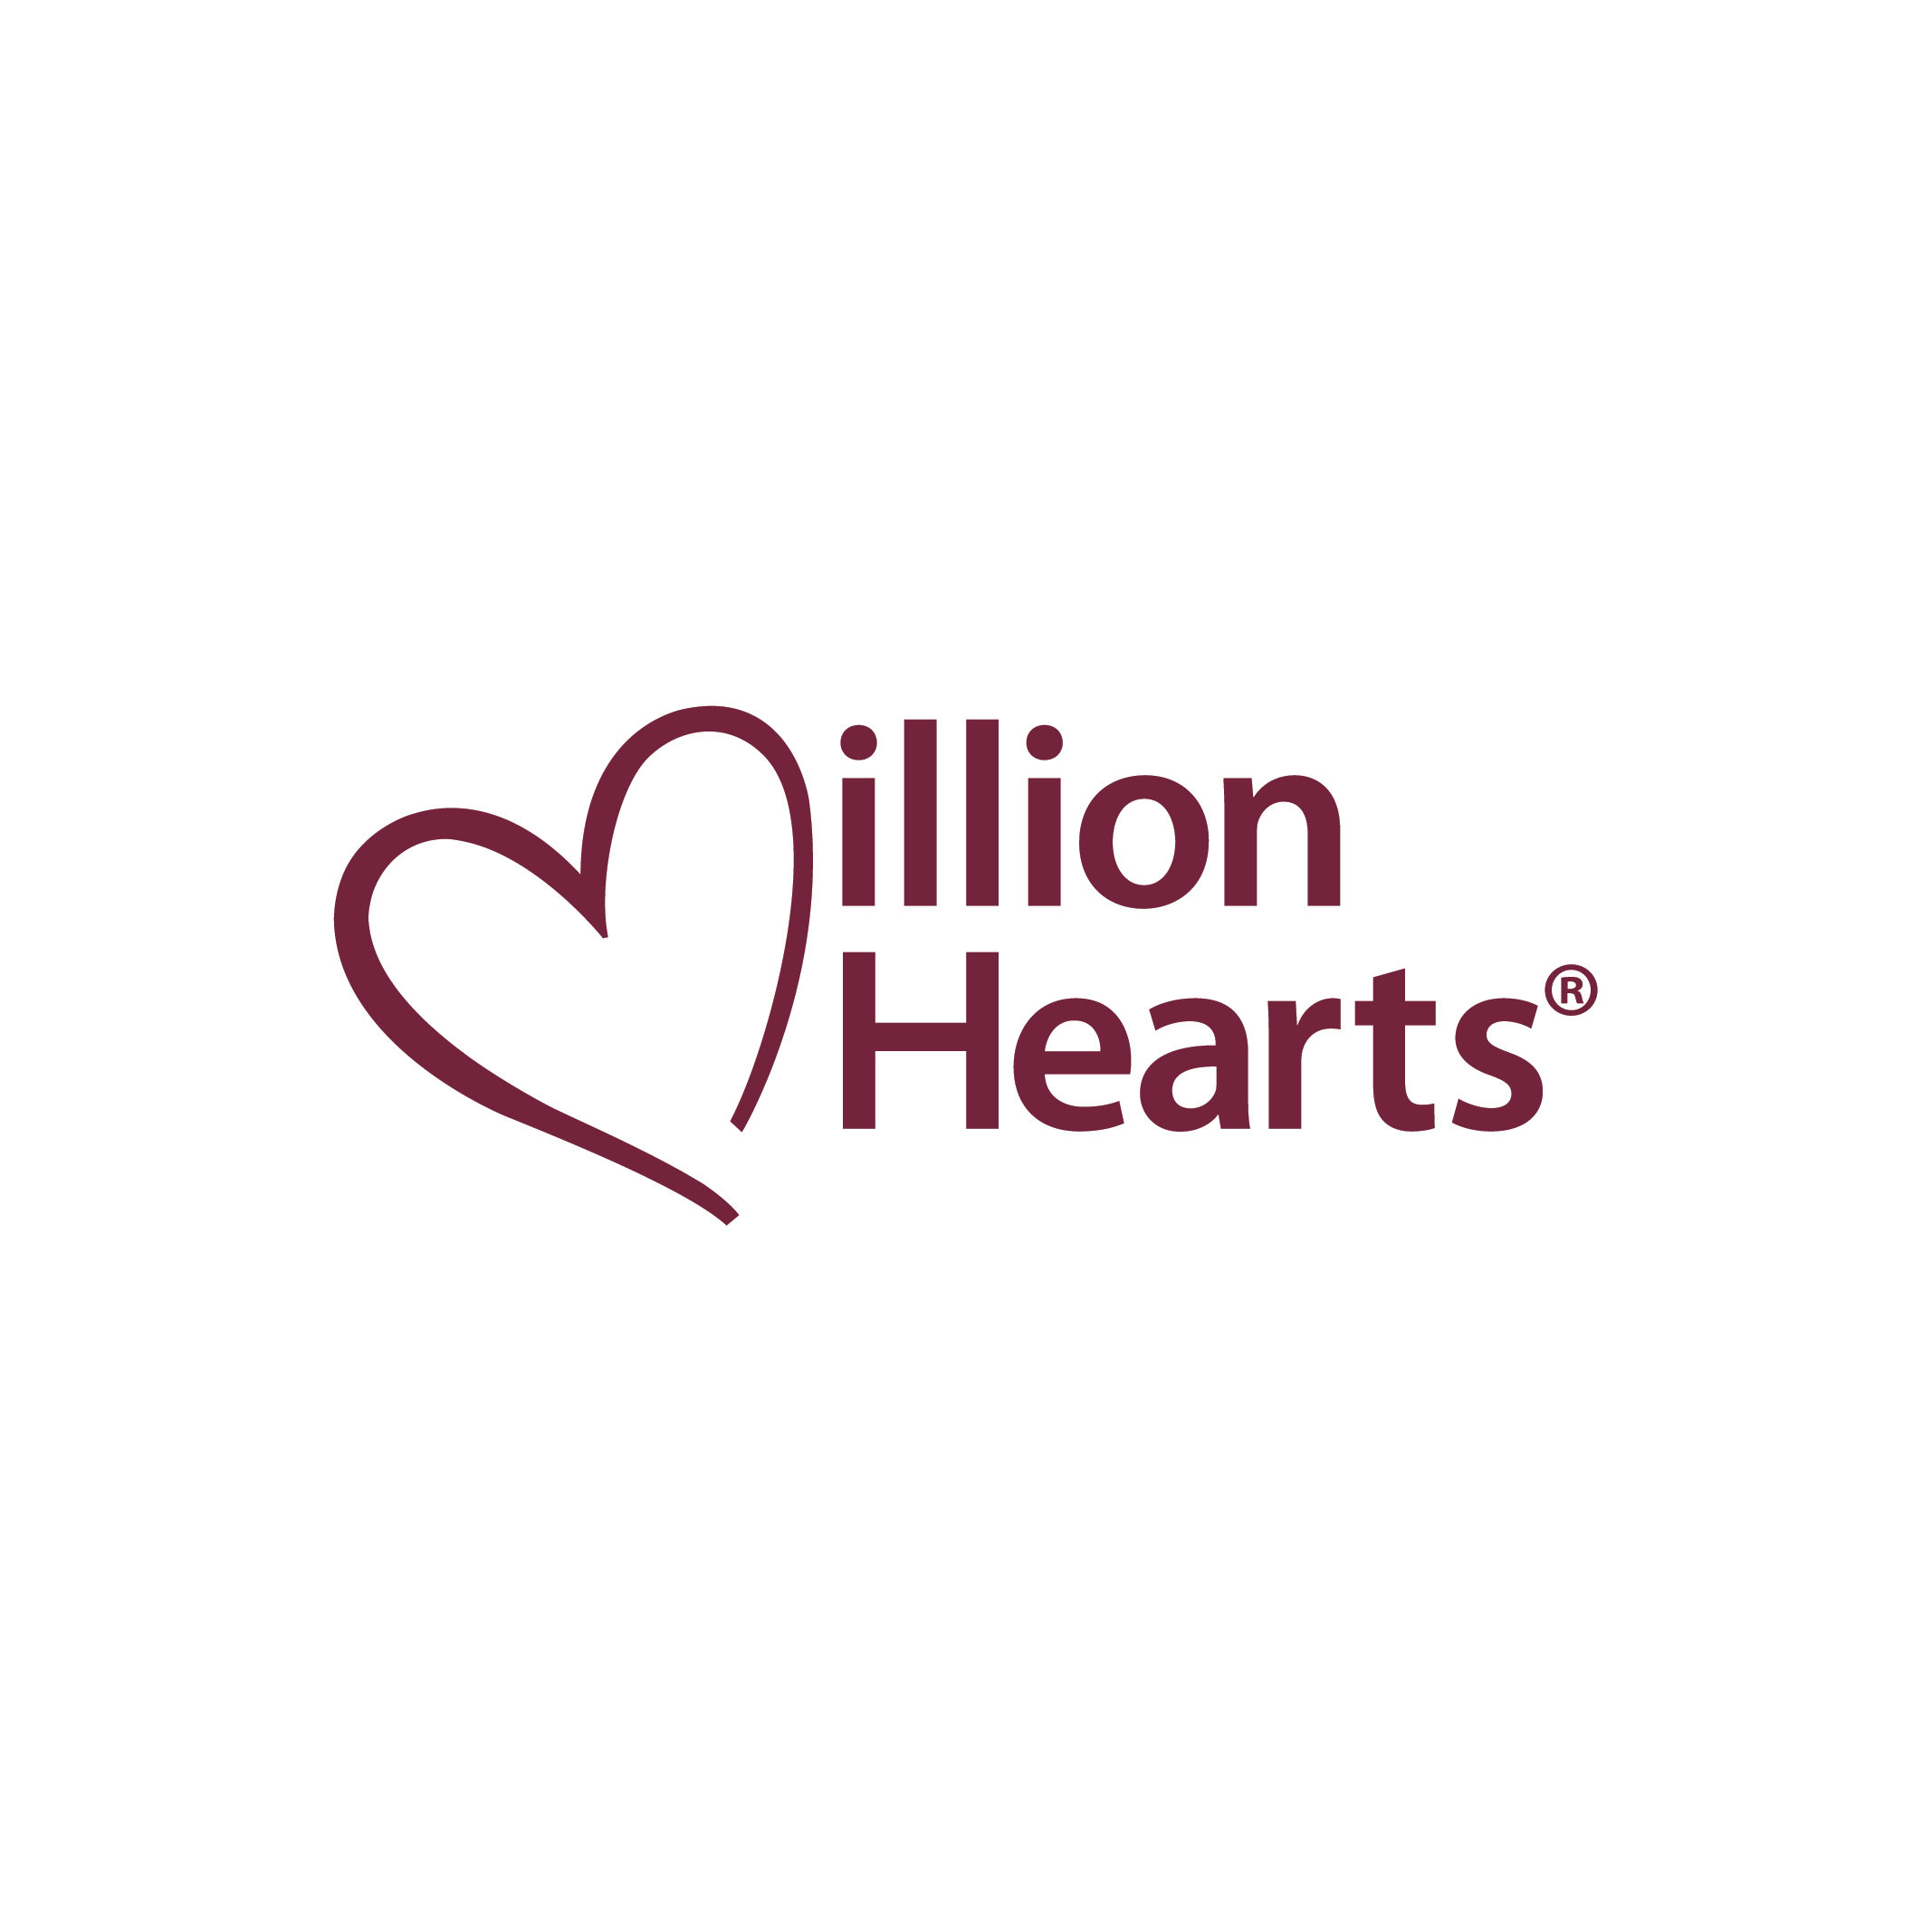 Hearts Logo - Logos | Million Hearts